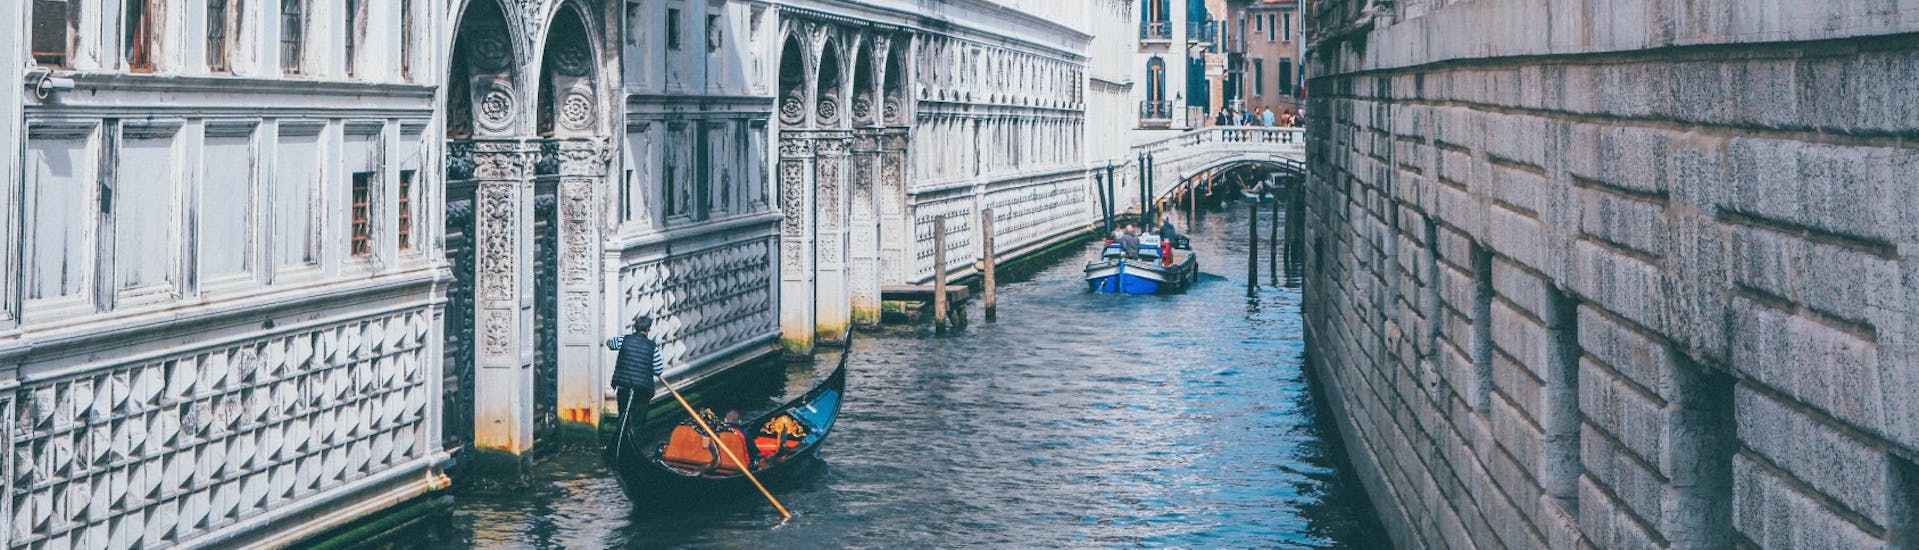 Gondoles passant sous le Pont des Soupirs, vues lors du Tour privé en gondole depuis San-Marco au Pont des Soupirs avec Agenzia Gondolieri Travel Venezia.